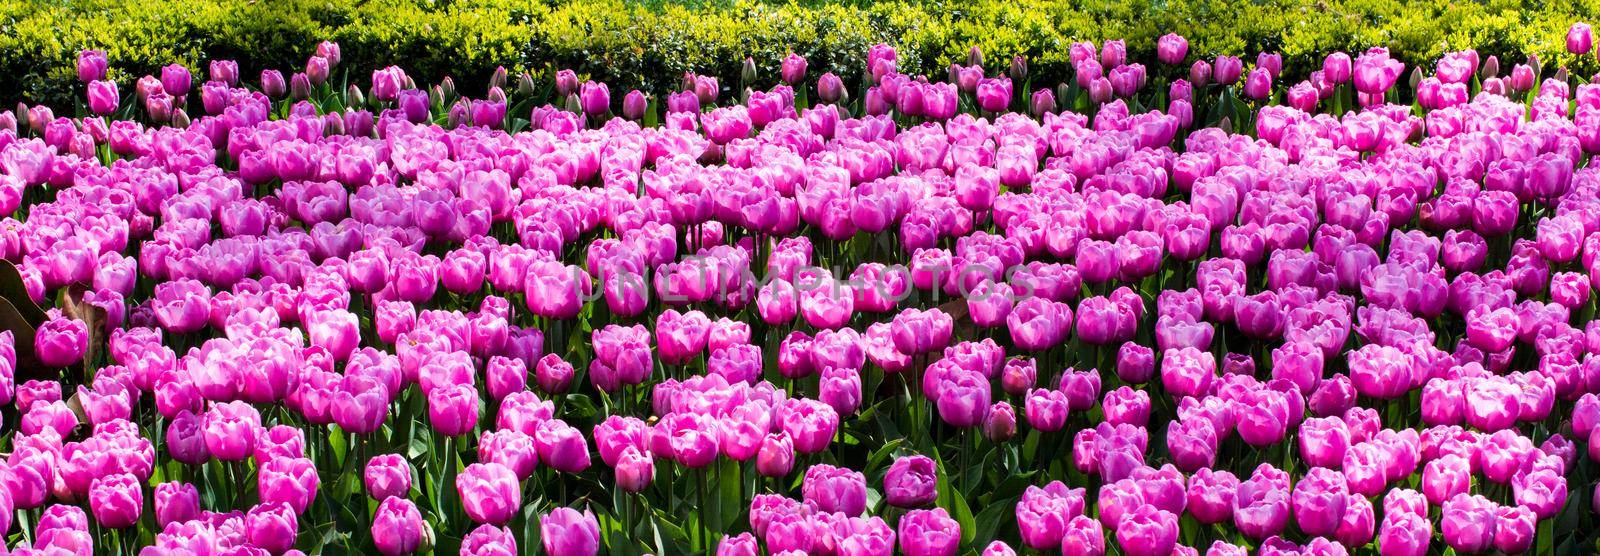 Pink color tulip flowers bloom  by berkay